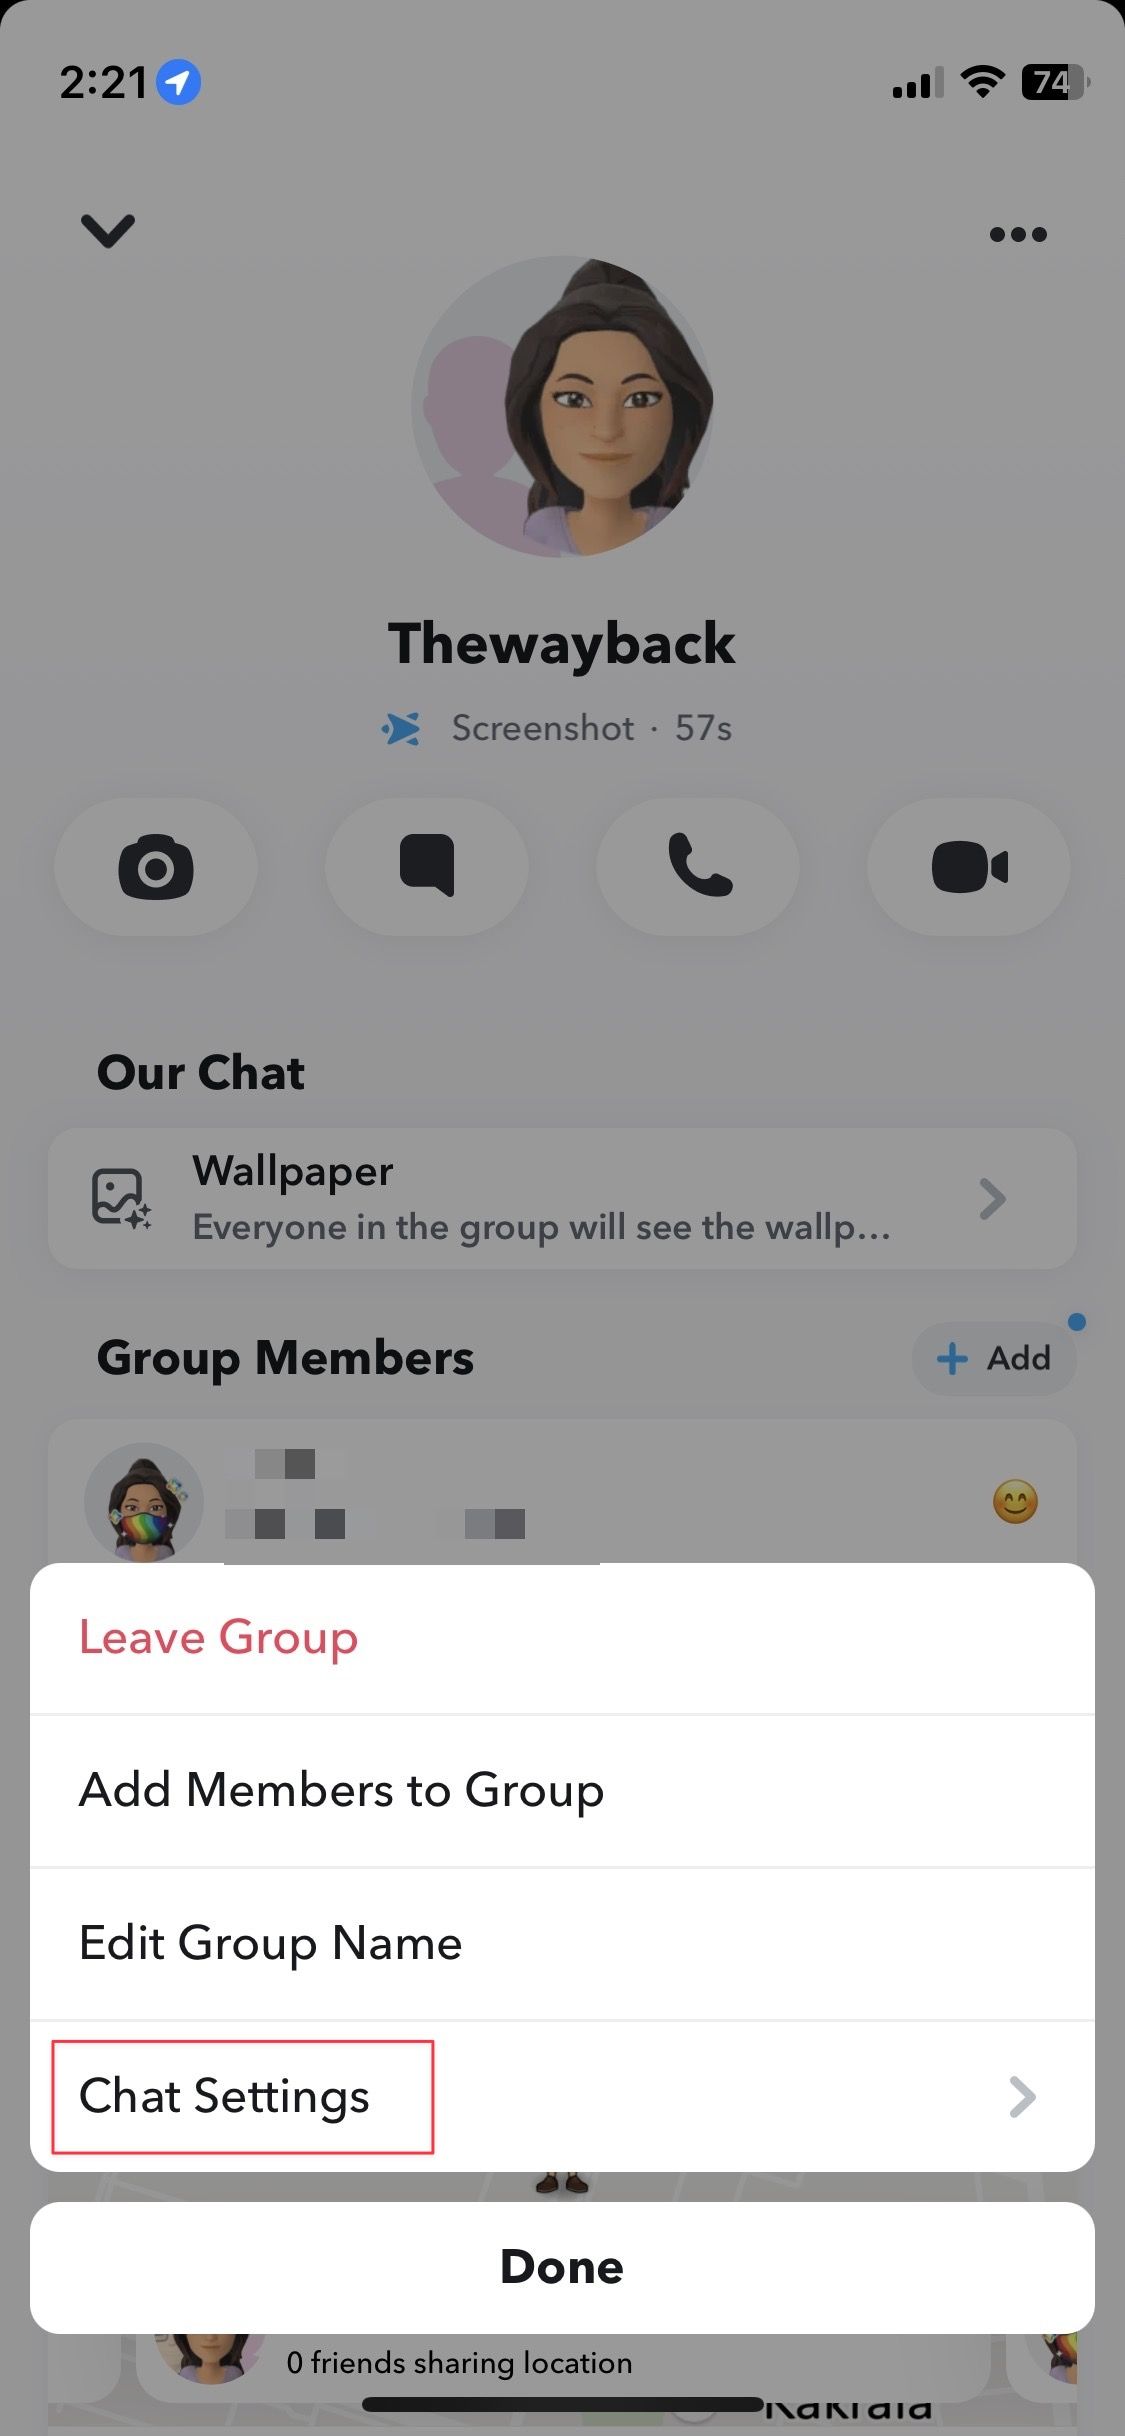 Captura de tela mostrando as configurações de bate-papo no bate-papo em grupo do Snapchat